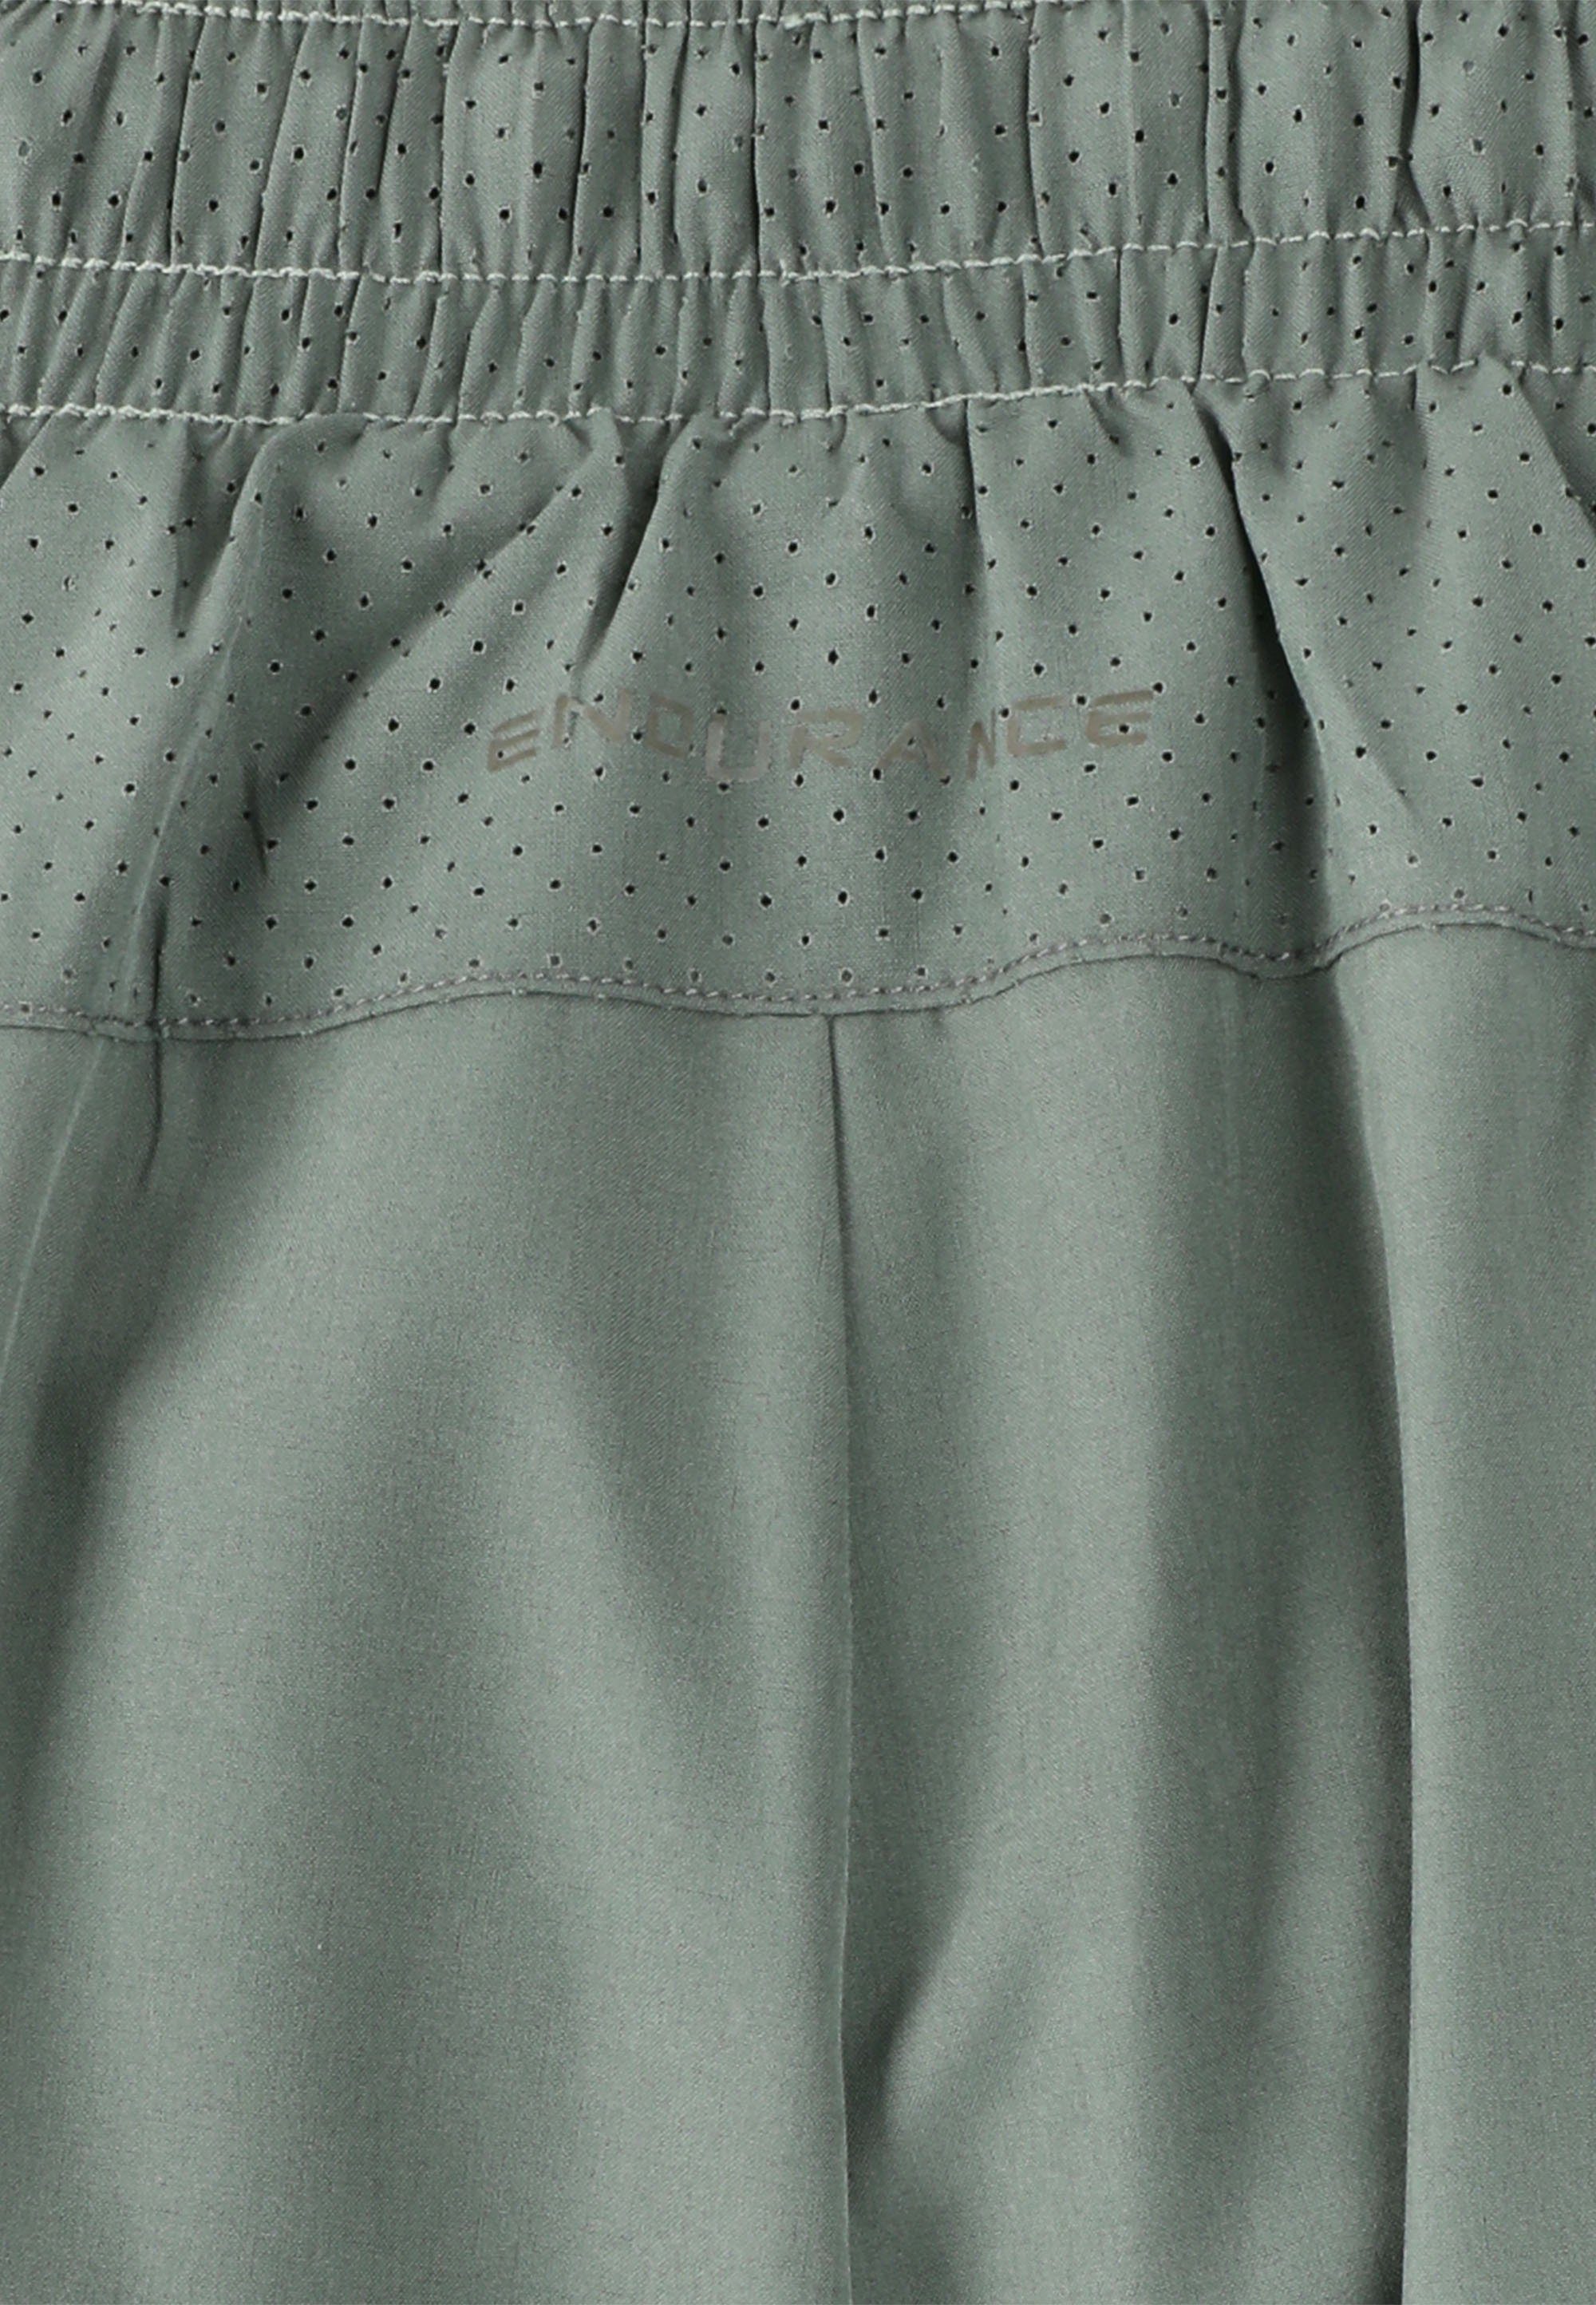 Taschen Shorts ENDURANCE mit dunkelgrün praktischen Eslaire